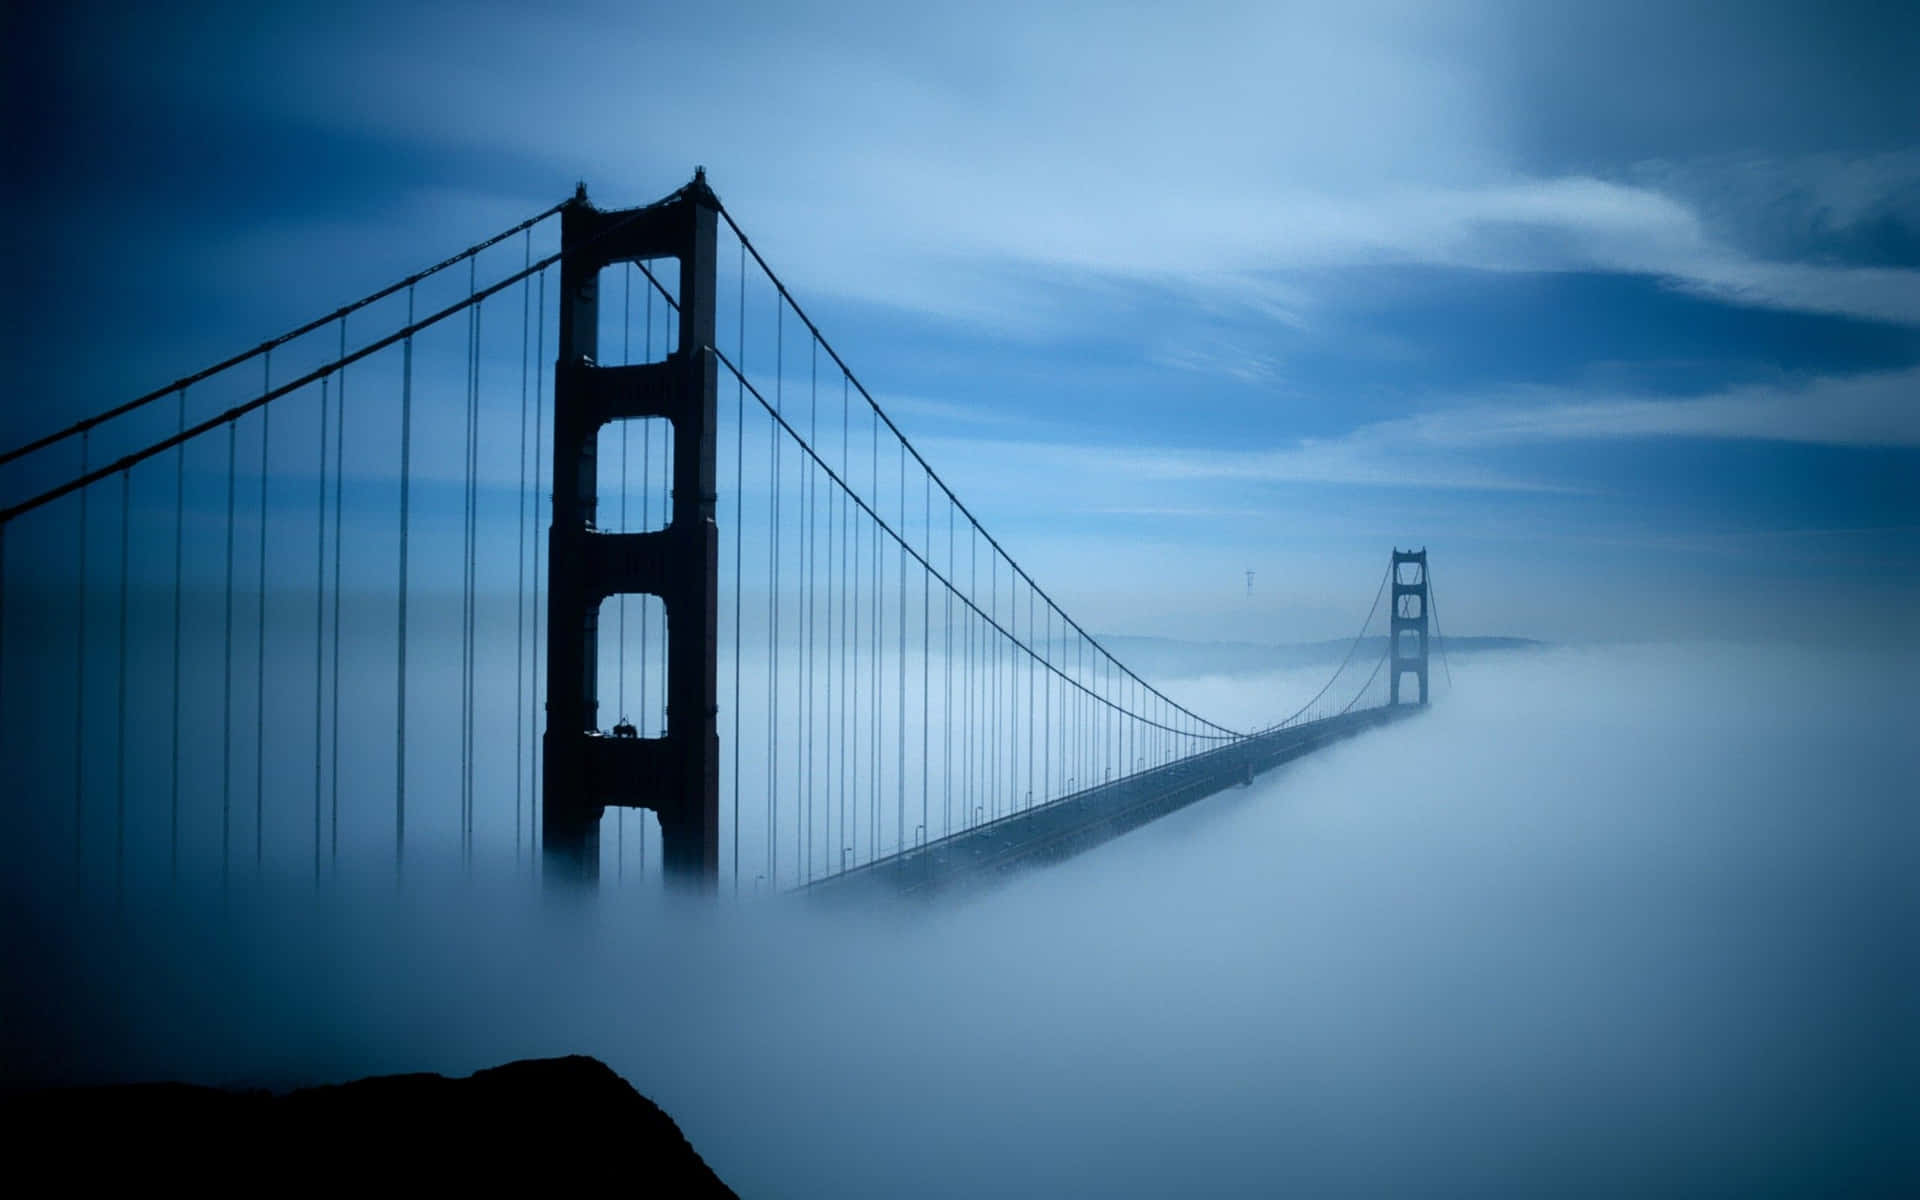 Labahía De San Francisco Cubierta De Niebla: El Mejor Fondo Para Tu Computadora O Teléfono Móvil.